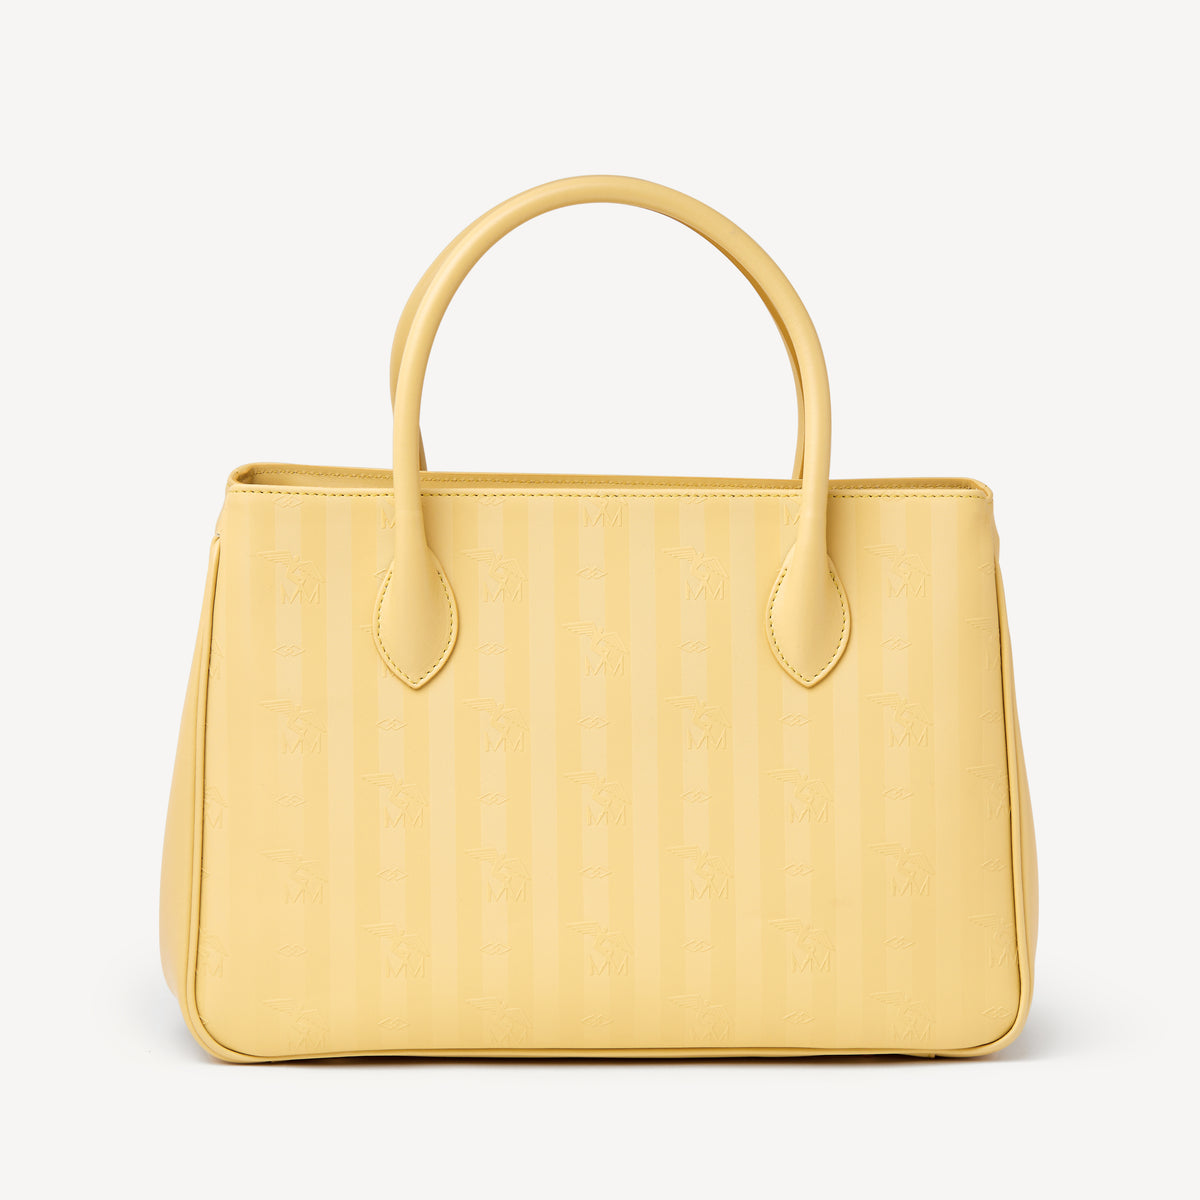 DONAT | Handtasche ginger gelb/gold - VON HINTEN